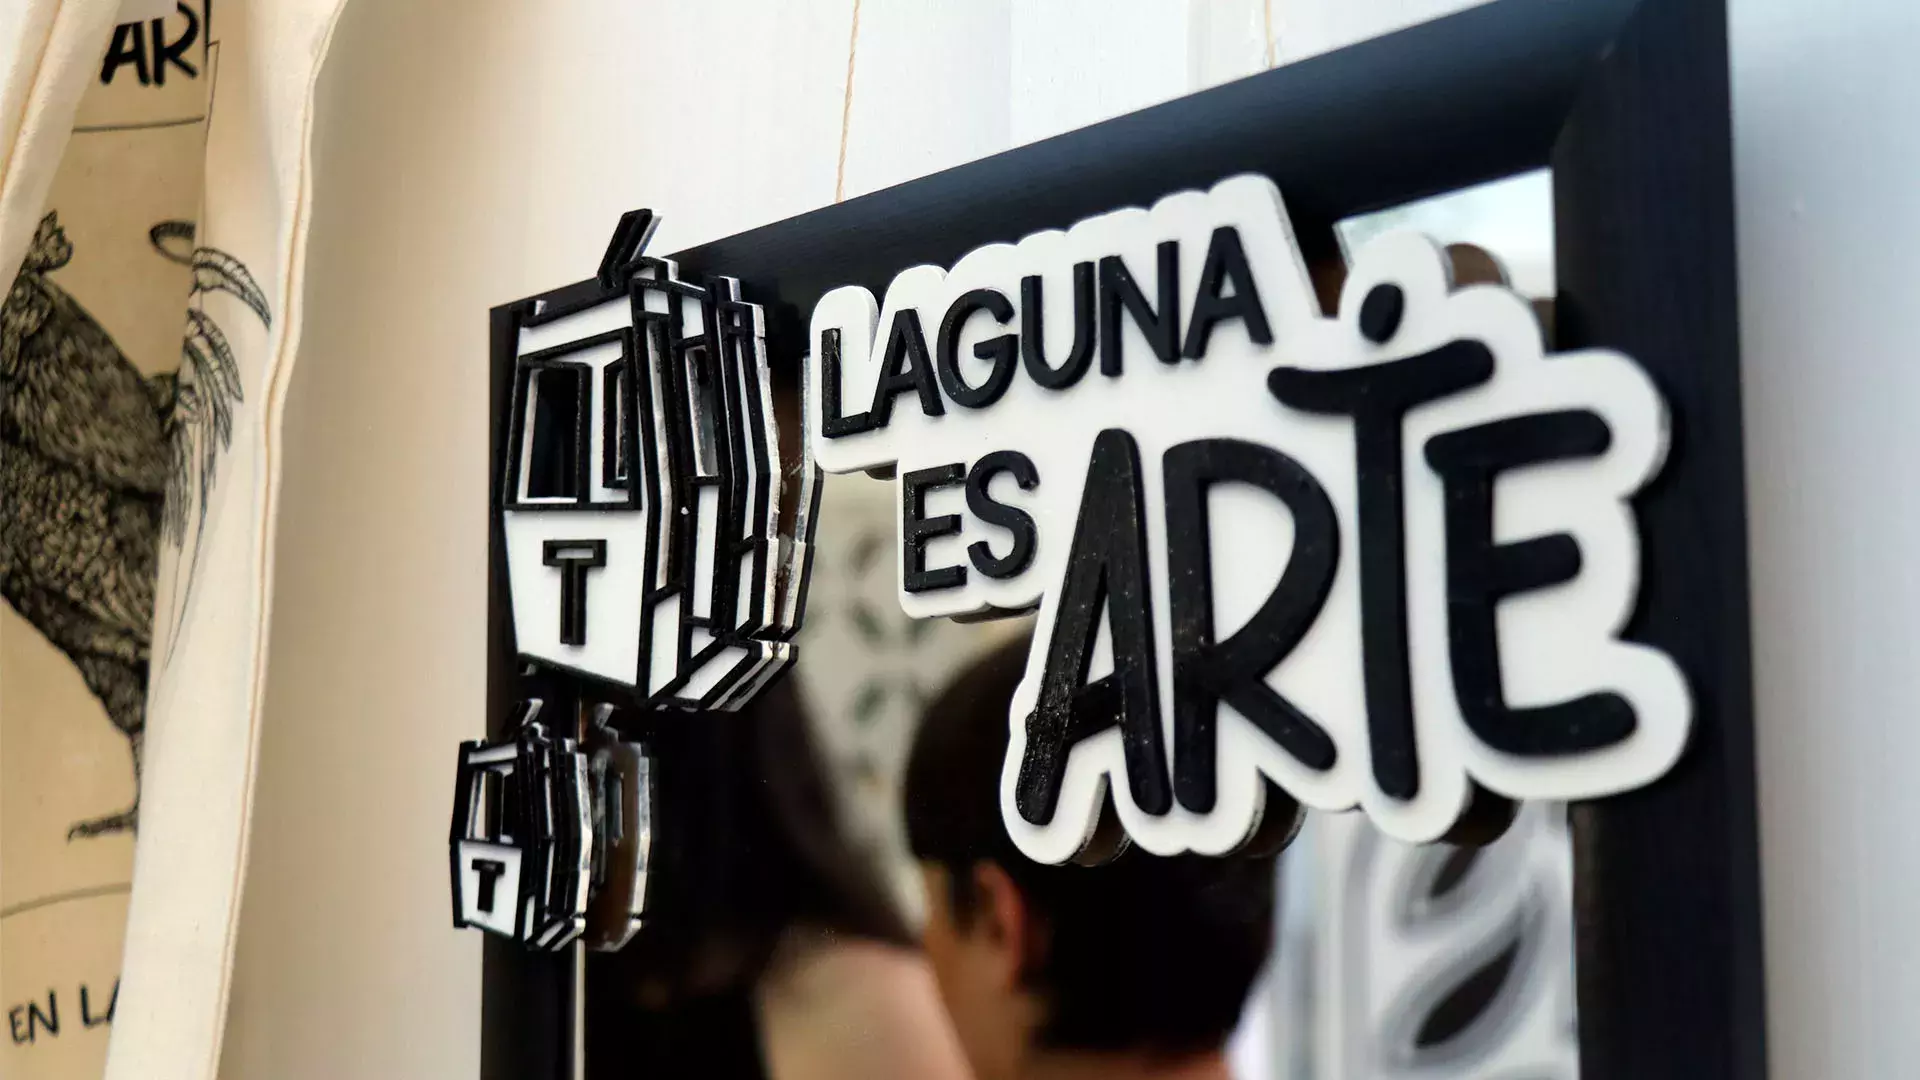 Laguna es arte inspira a personas a crear y exponer sus obras